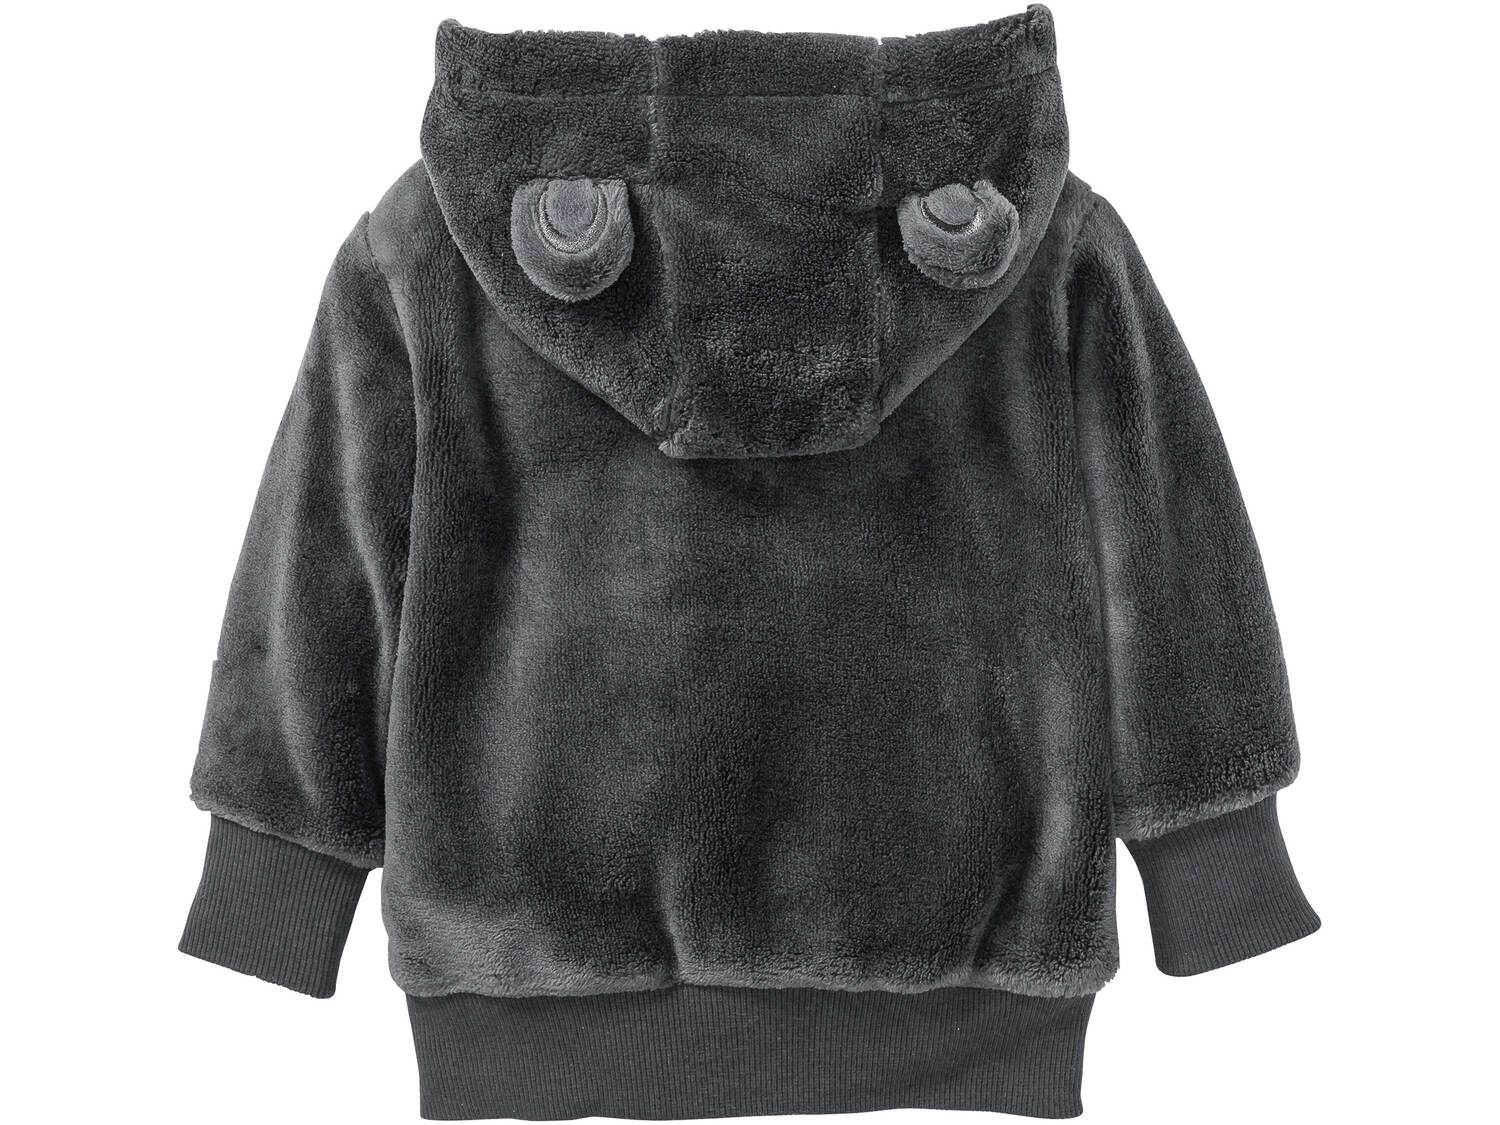 Bluza polarowa Lupilu, cena 22,99 PLN 
- rozmiary: 62-92
- z miękkiego, przytulnego ...